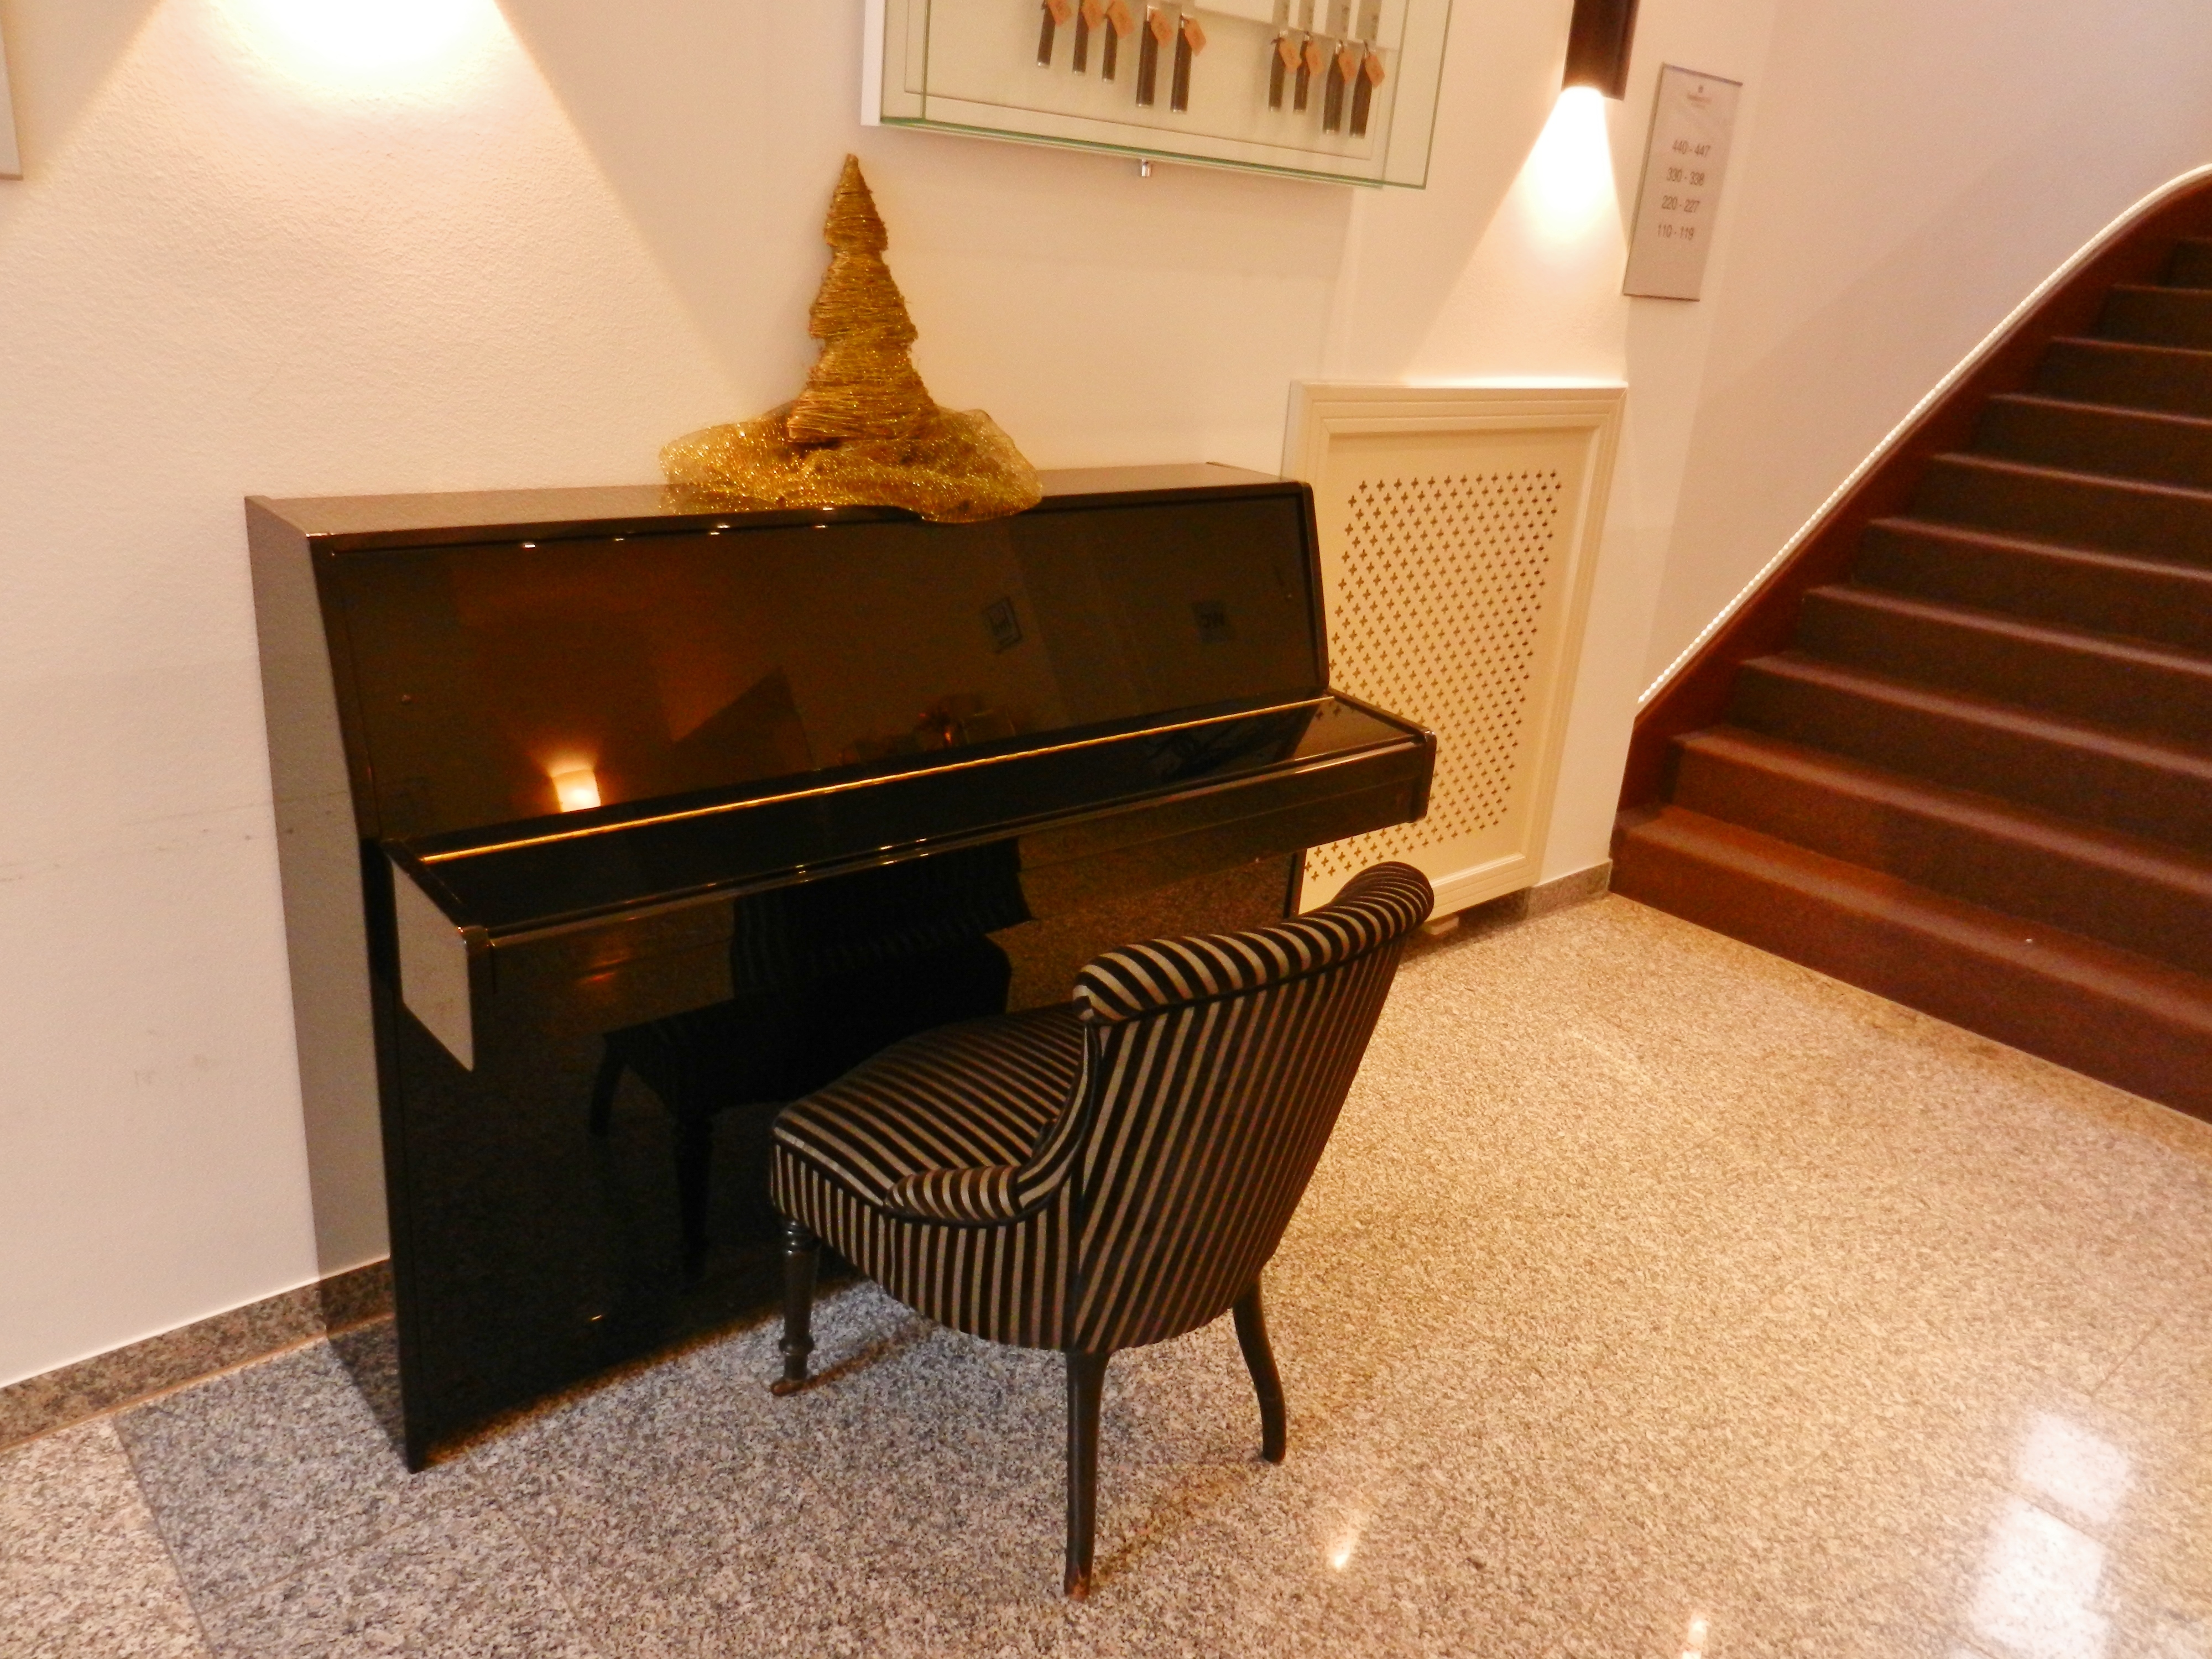 Pianoforte des Hauses